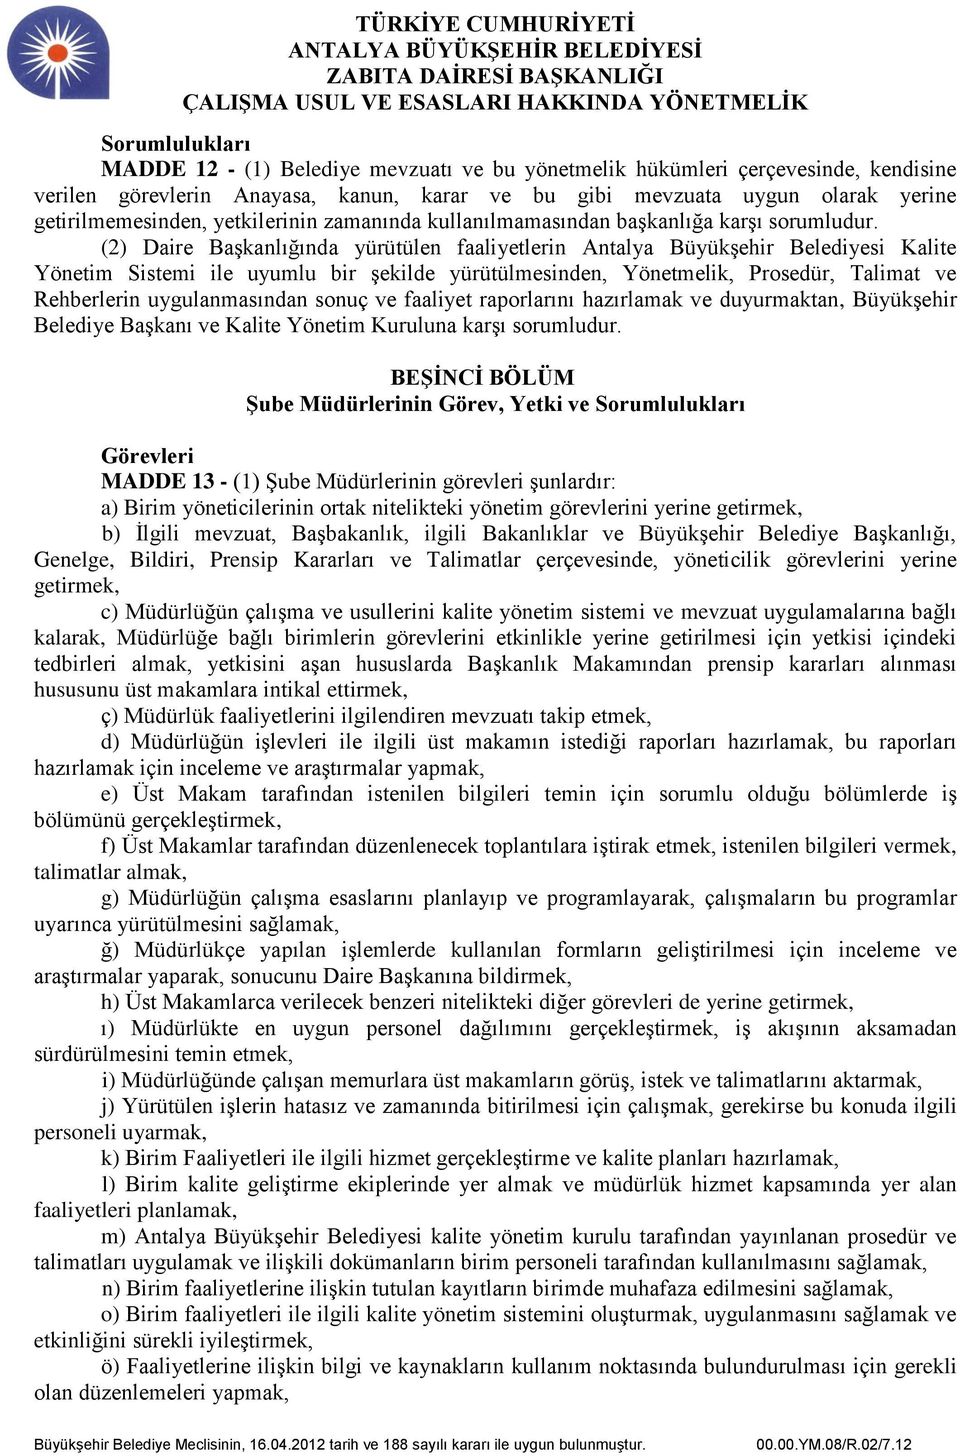 (2) Daire Başkanlığında yürütülen faaliyetlerin Antalya Büyükşehir Belediyesi Kalite Yönetim Sistemi ile uyumlu bir şekilde yürütülmesinden, Yönetmelik, Prosedür, Talimat ve Rehberlerin